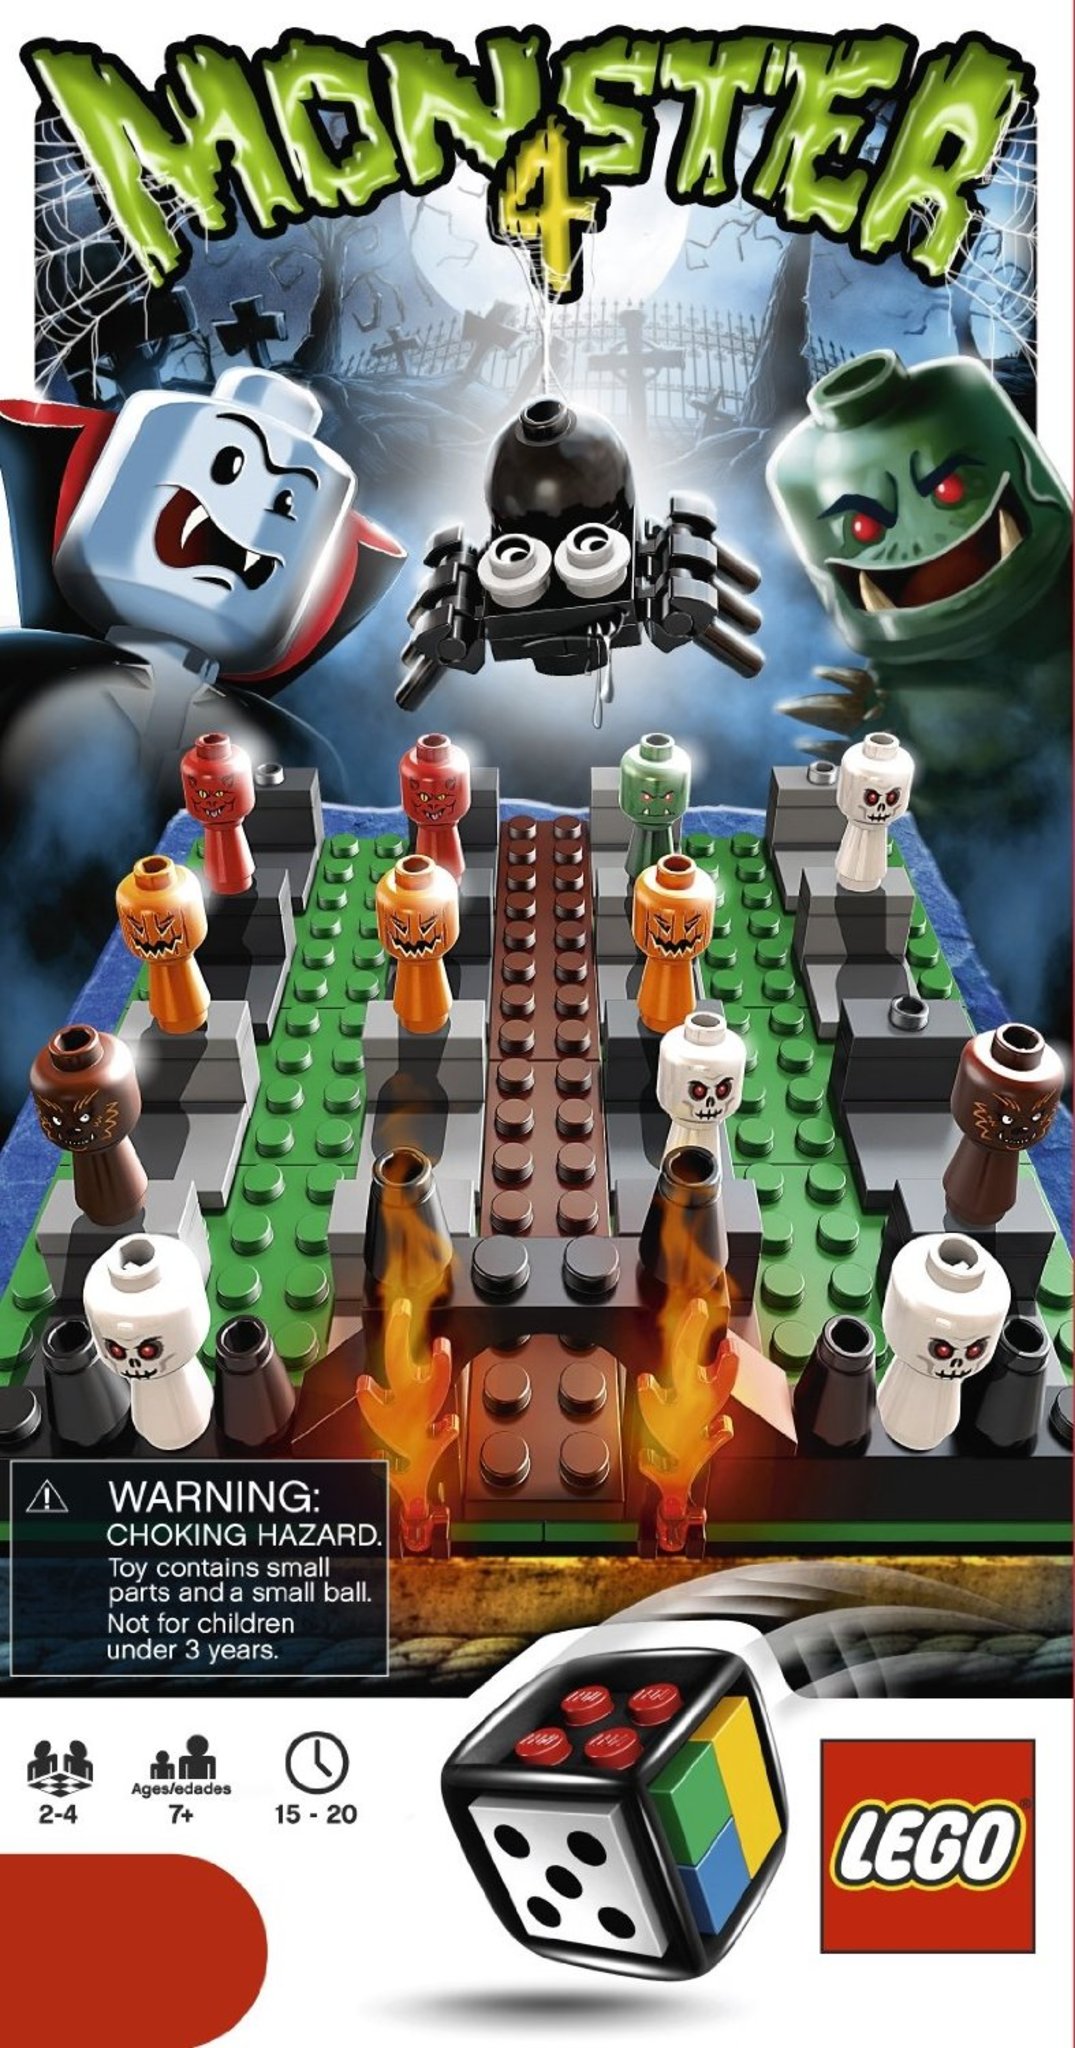 LEGO Games 3837 - Monster 4 | Mattonito